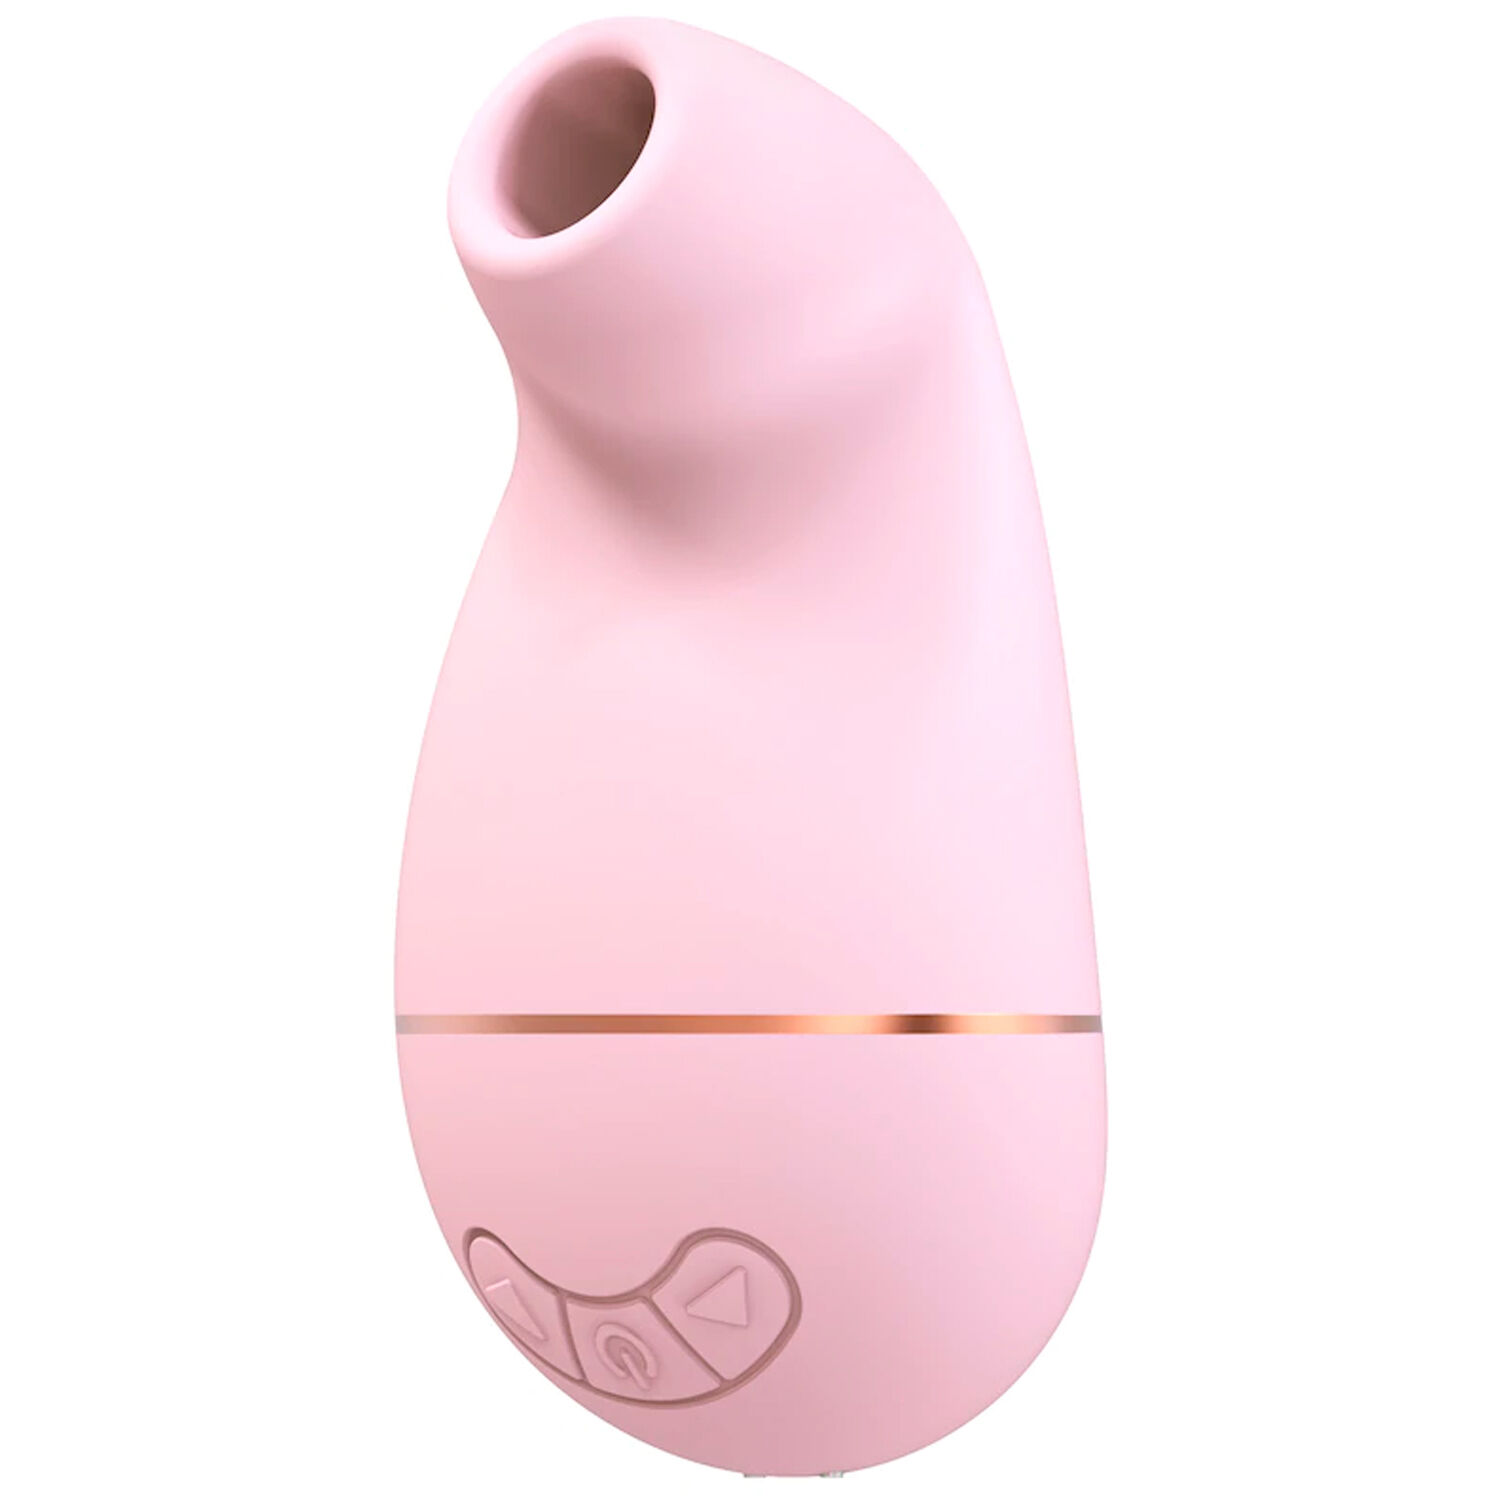 Irrisistable Irresistible Kissable Klitorisstimulator